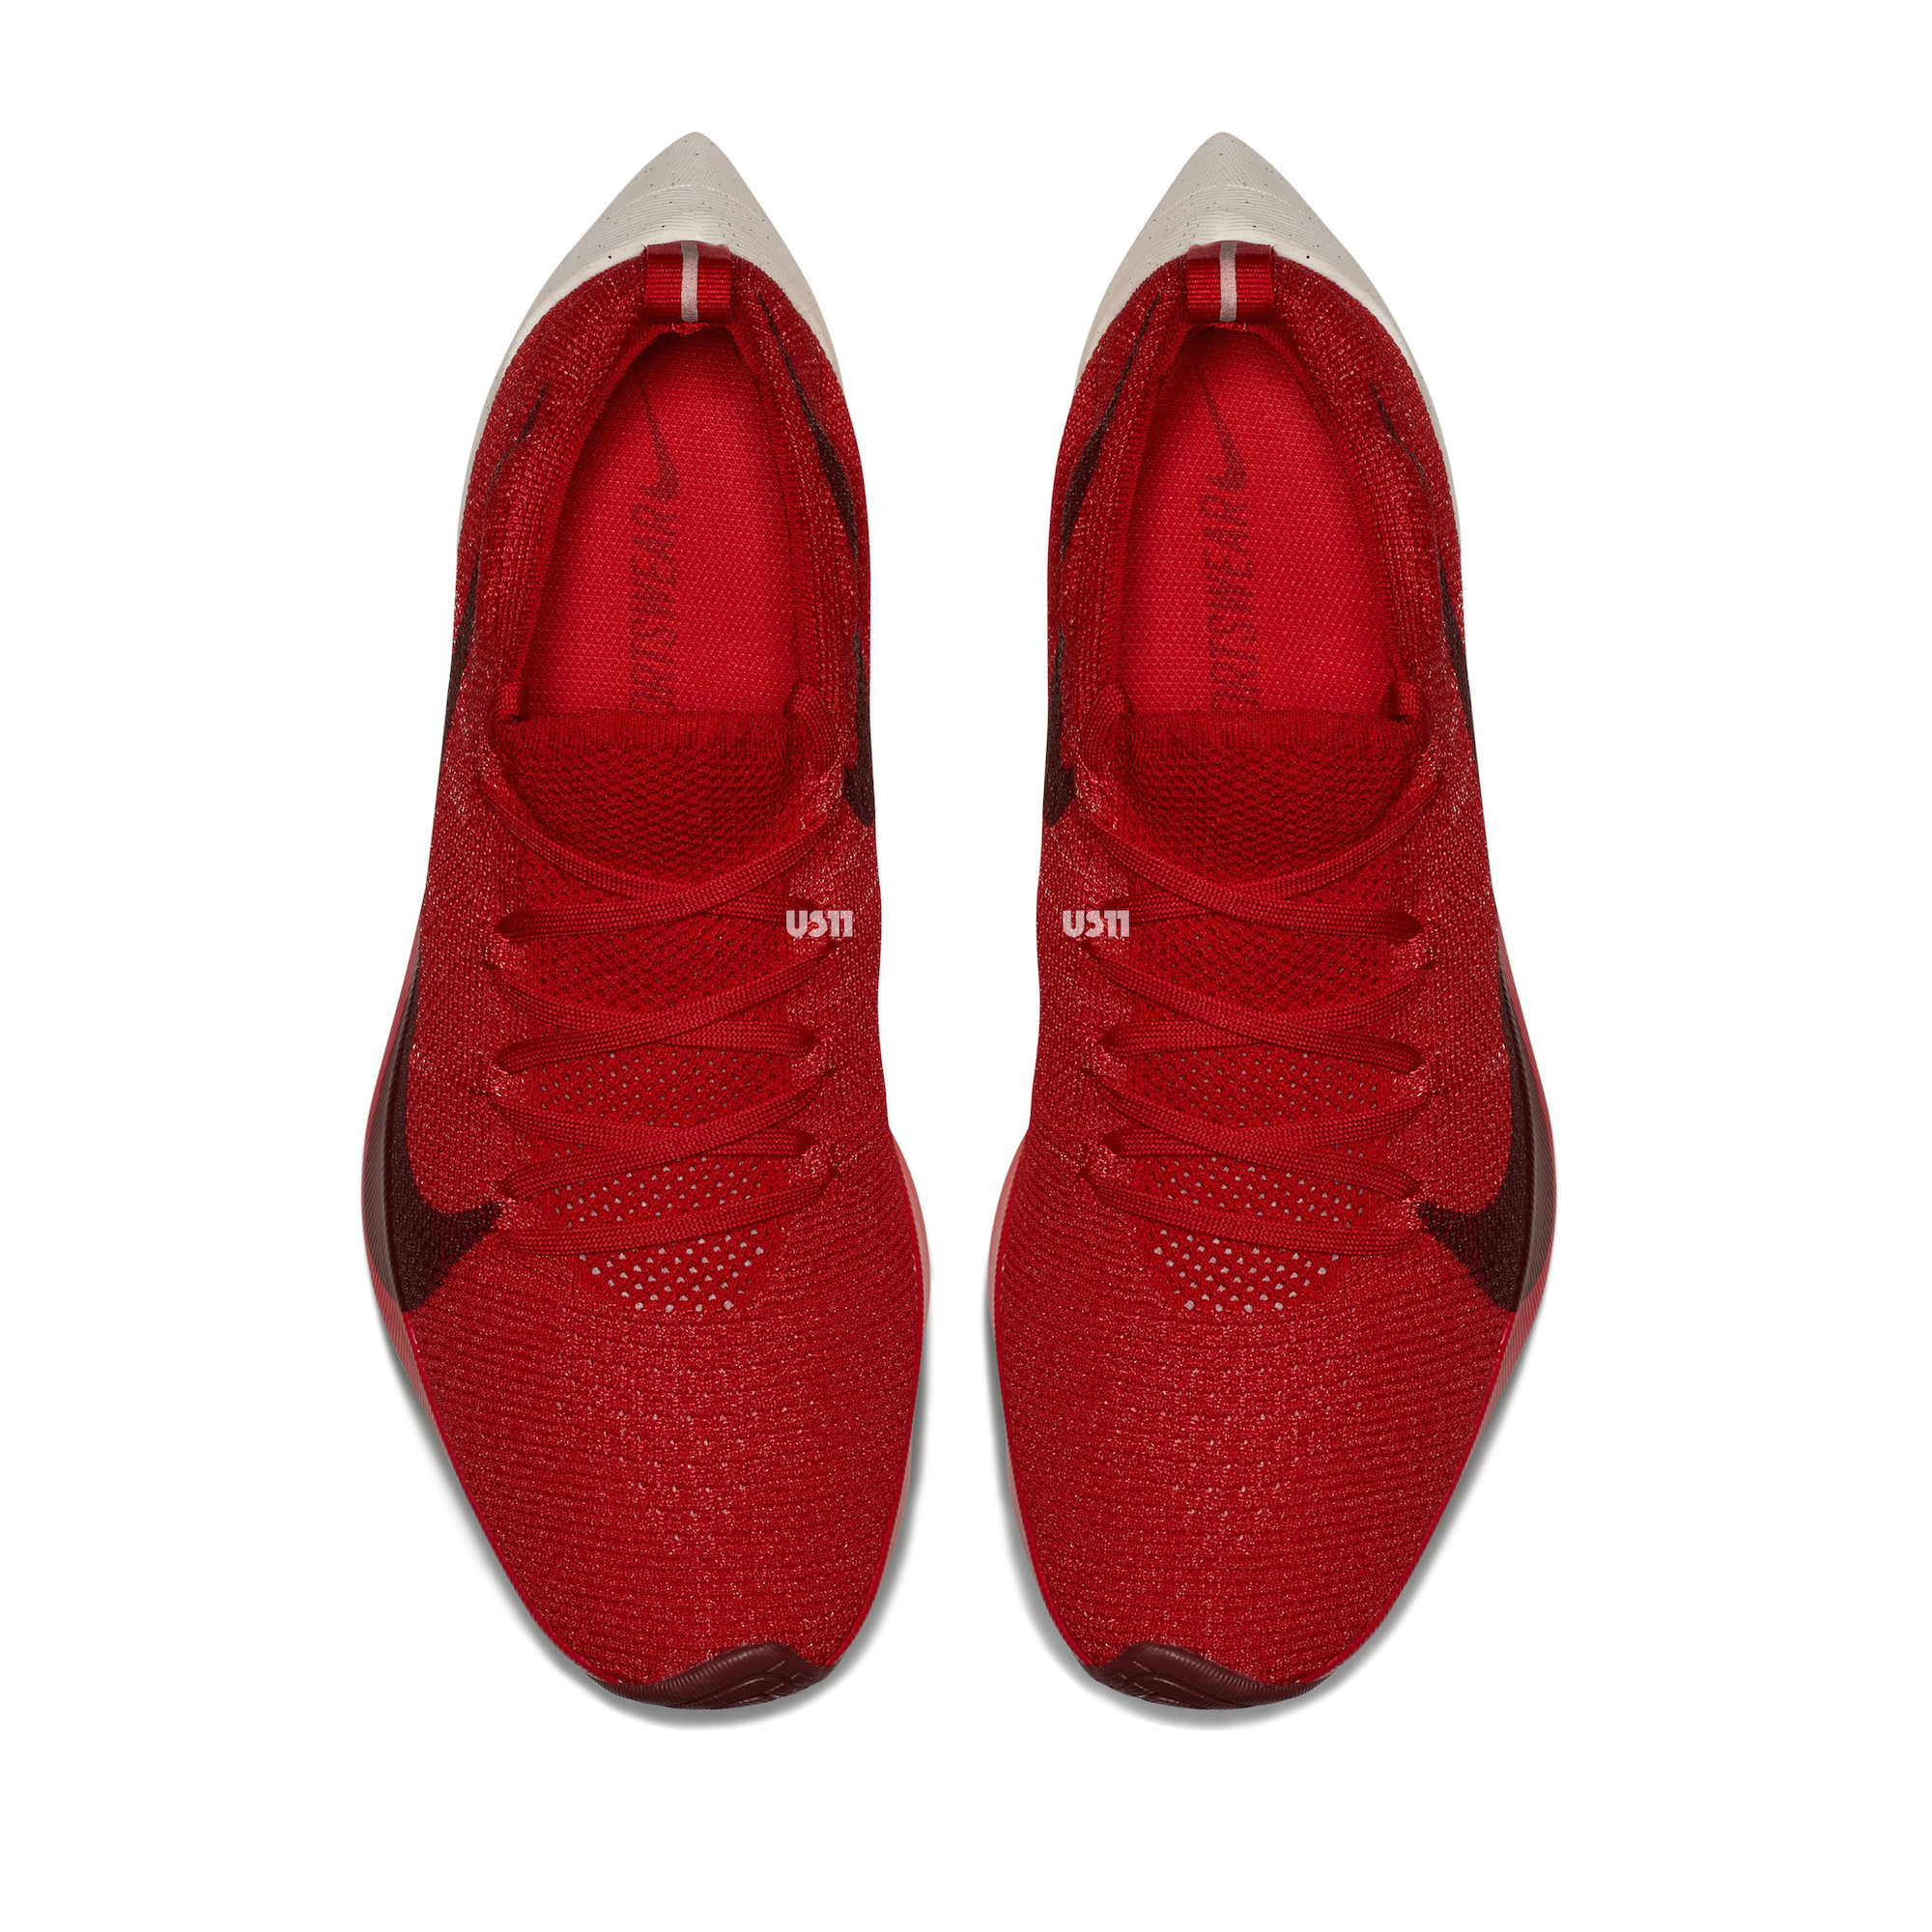 Nike Vapor Street Flyknit red 2